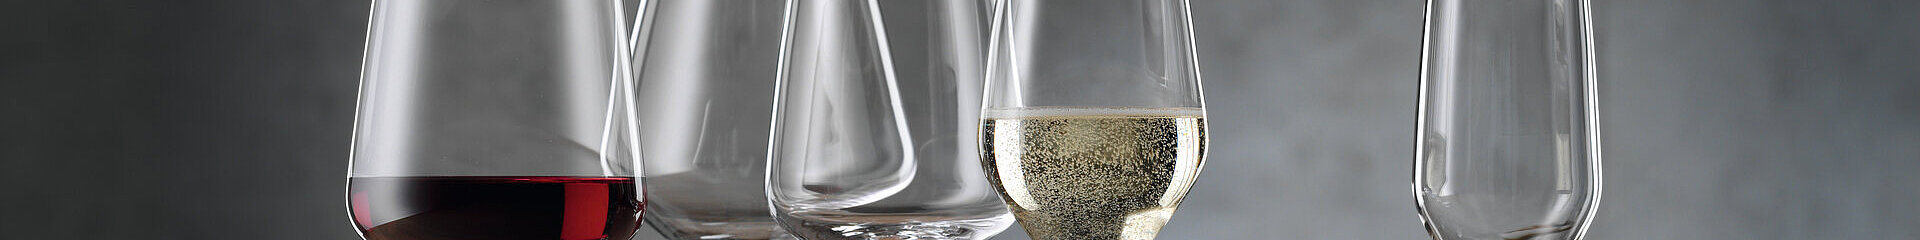 Čaša champagne, Style - Spiegelau